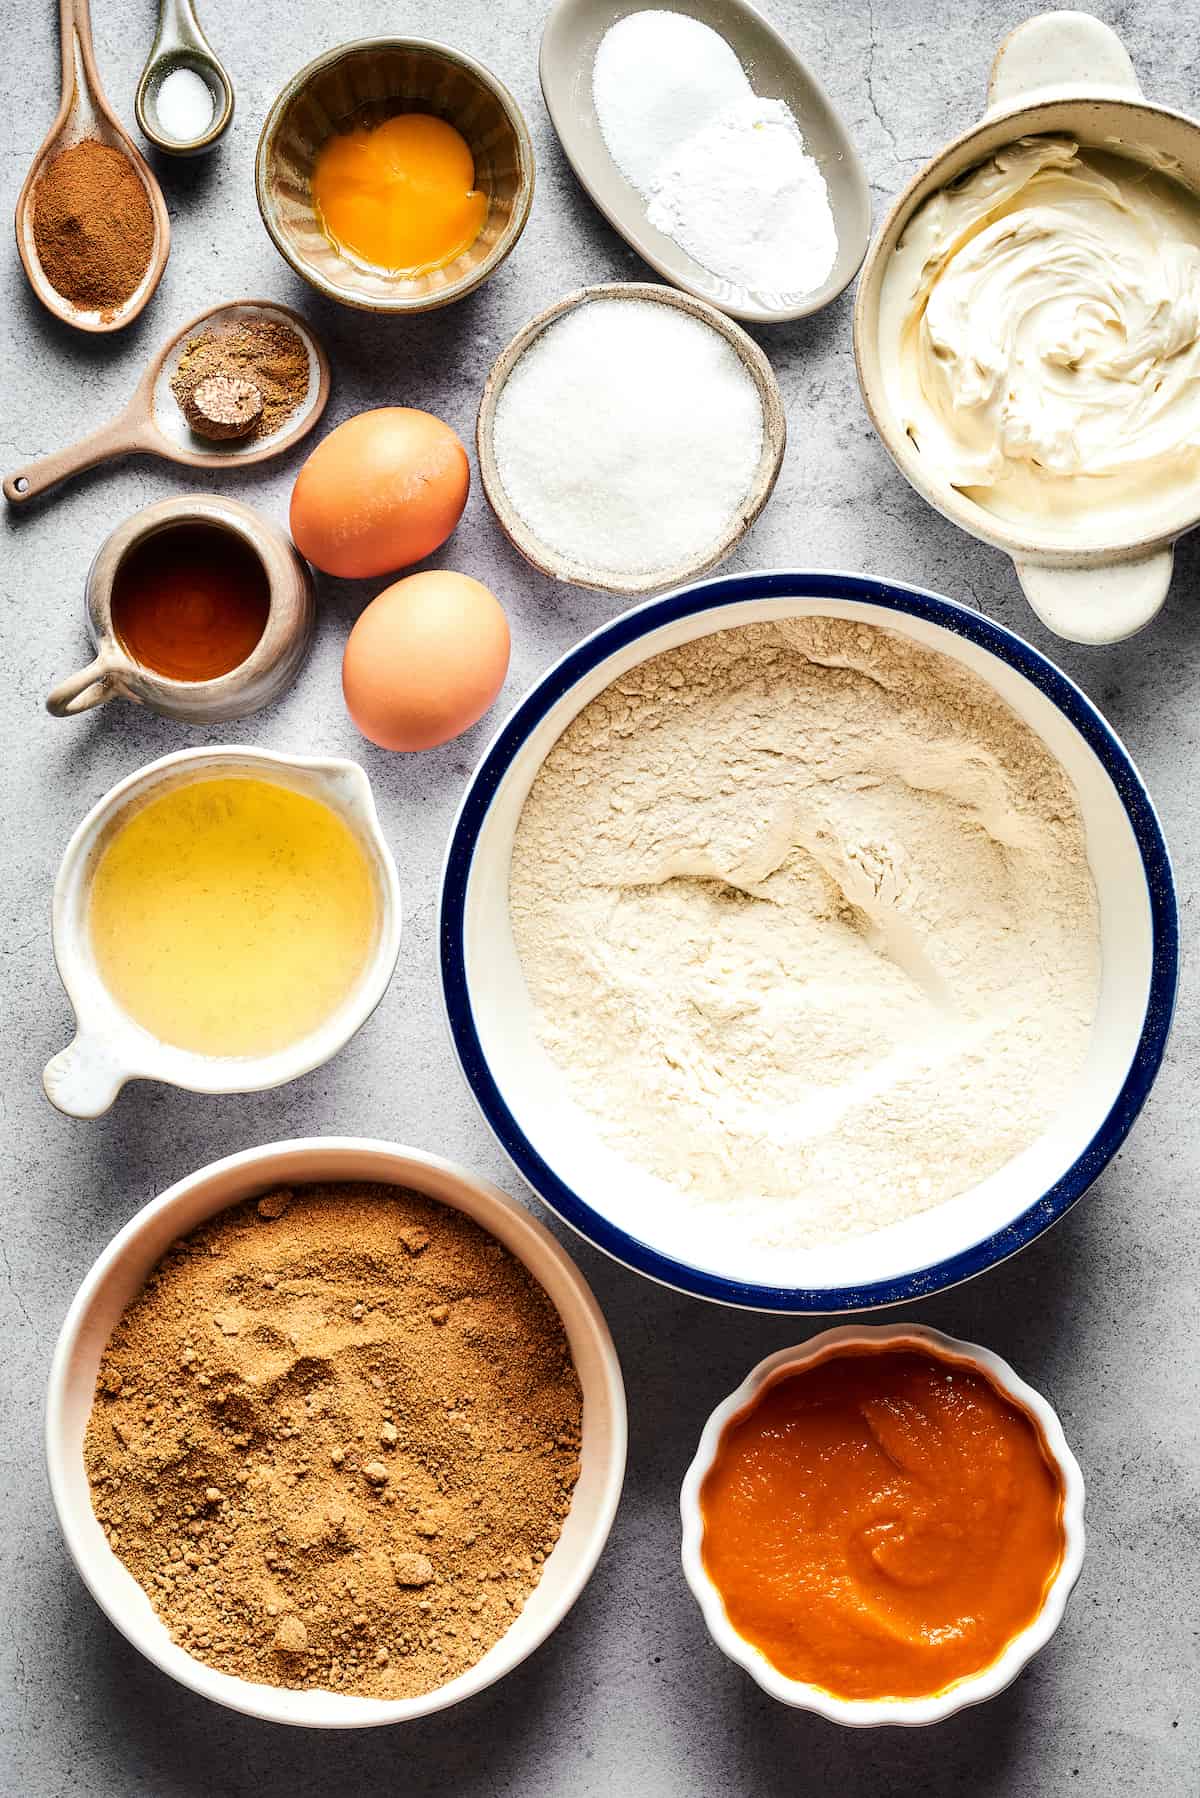 From top: Cinnamon, salt, eggs and an egg yolk, baking powder and baking soda, cream cheese, white sugar, vegetable oil, flour, brown sugar, pumpkin puree.